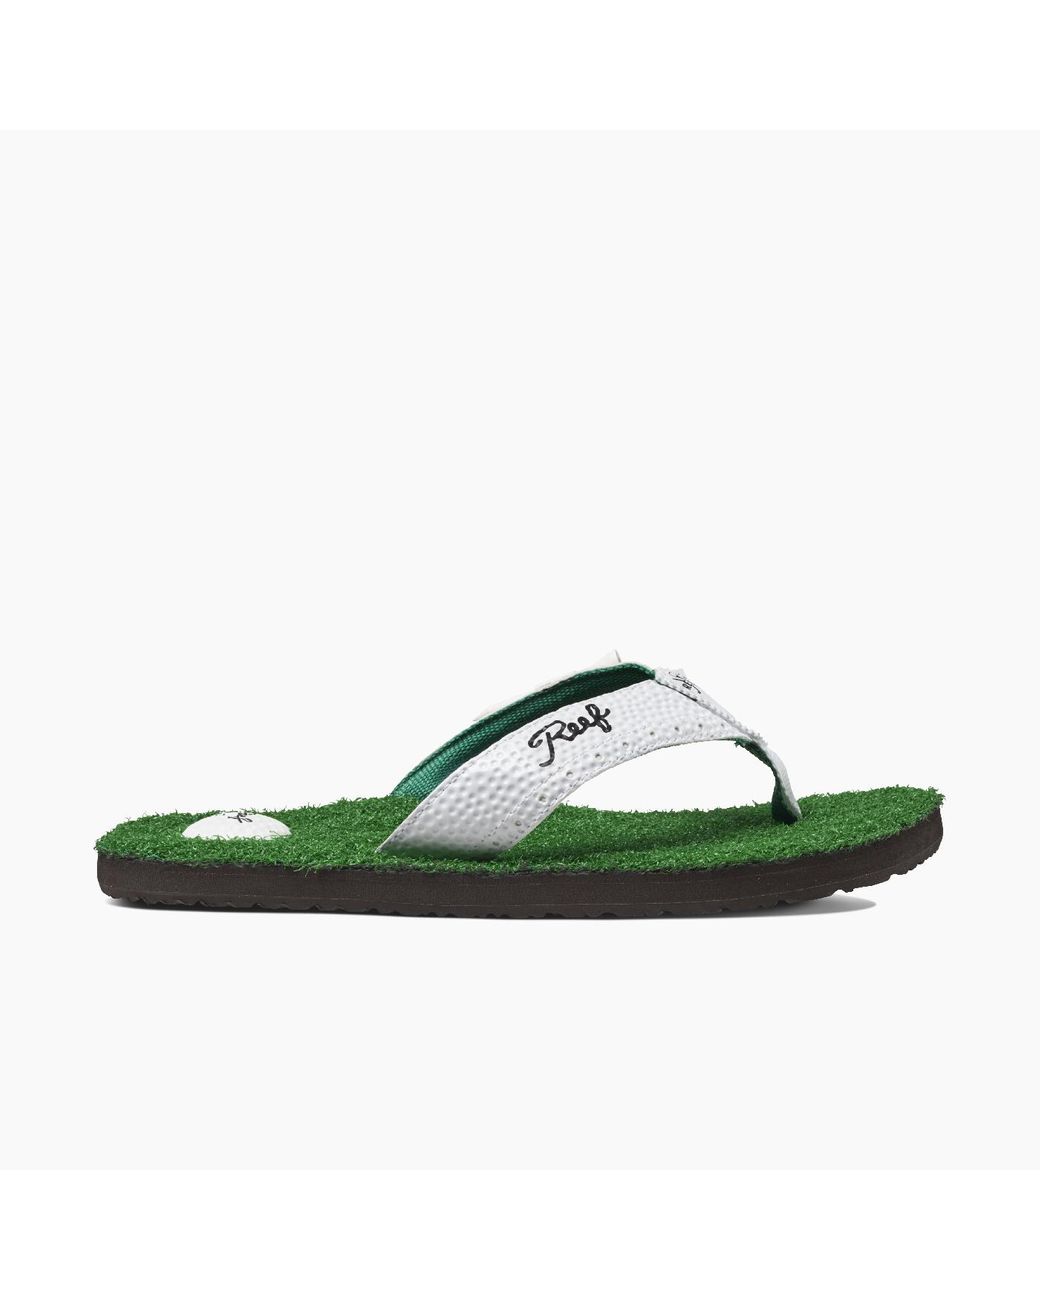 reef mulligan sandals